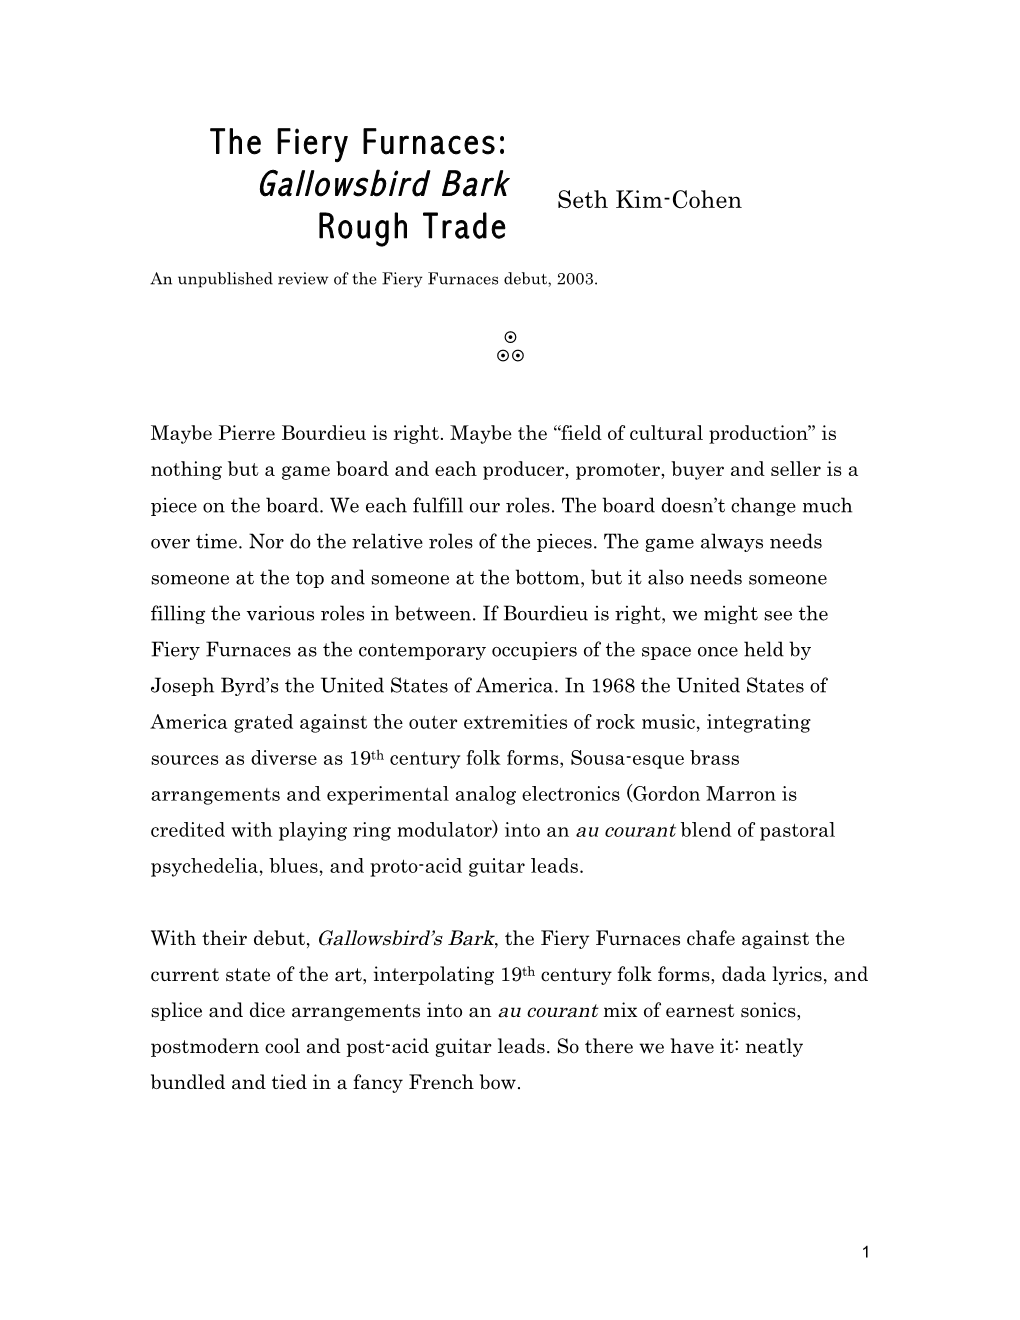 The Fiery Furnaces: Gallowsbird Bark Seth Kim-Cohen Rough Trade